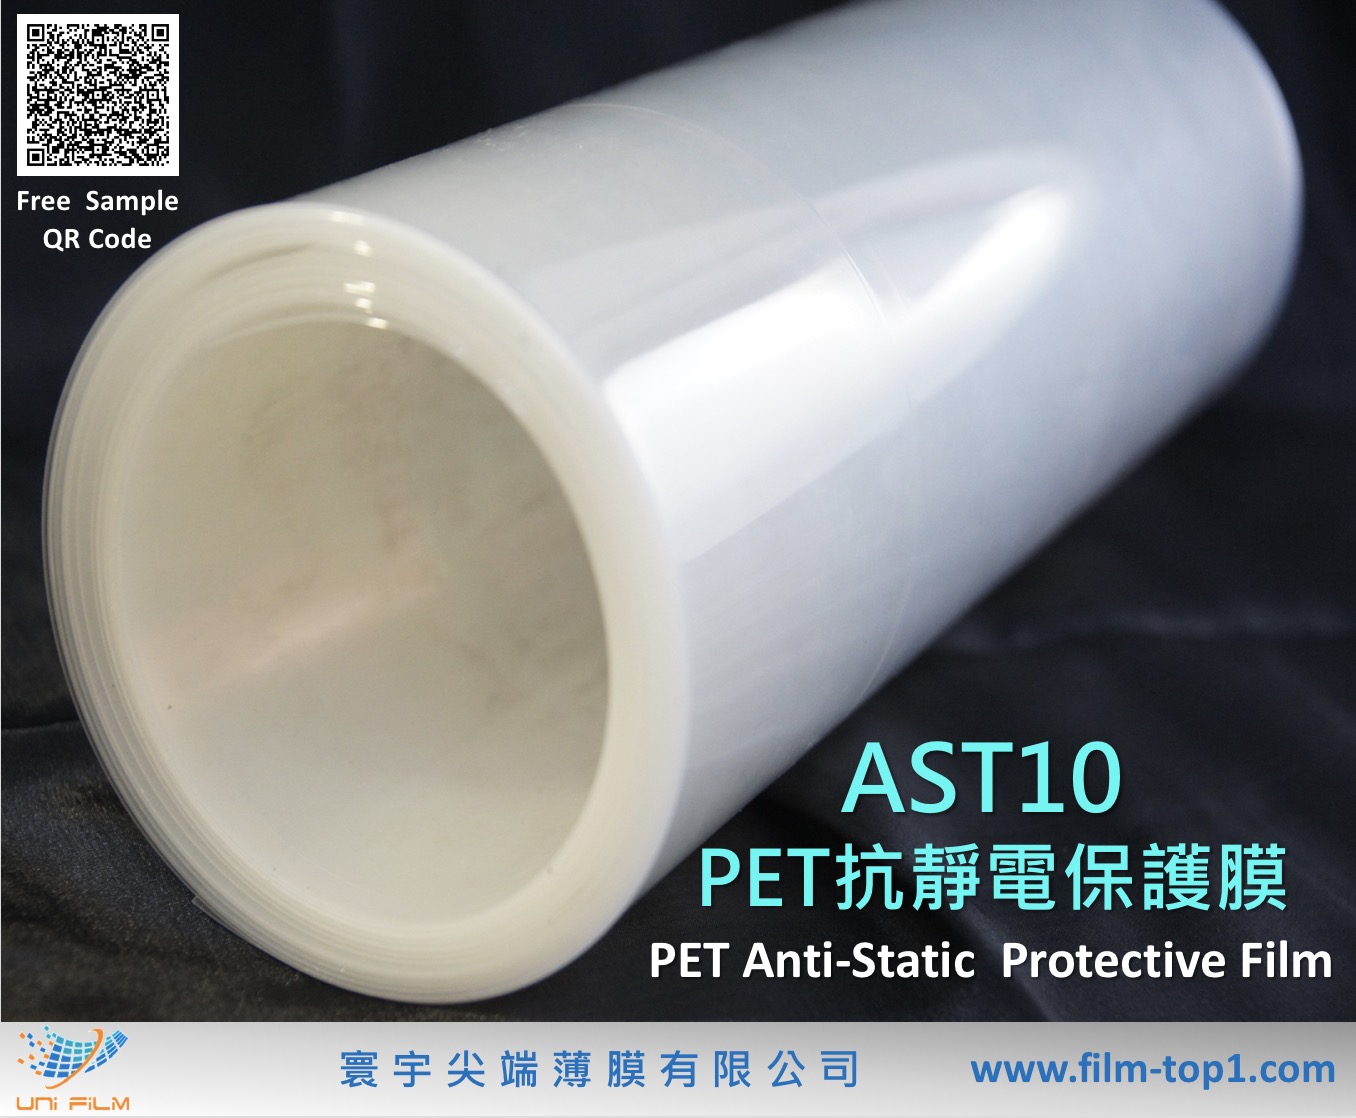 PET抗靜電保護膜 AST10